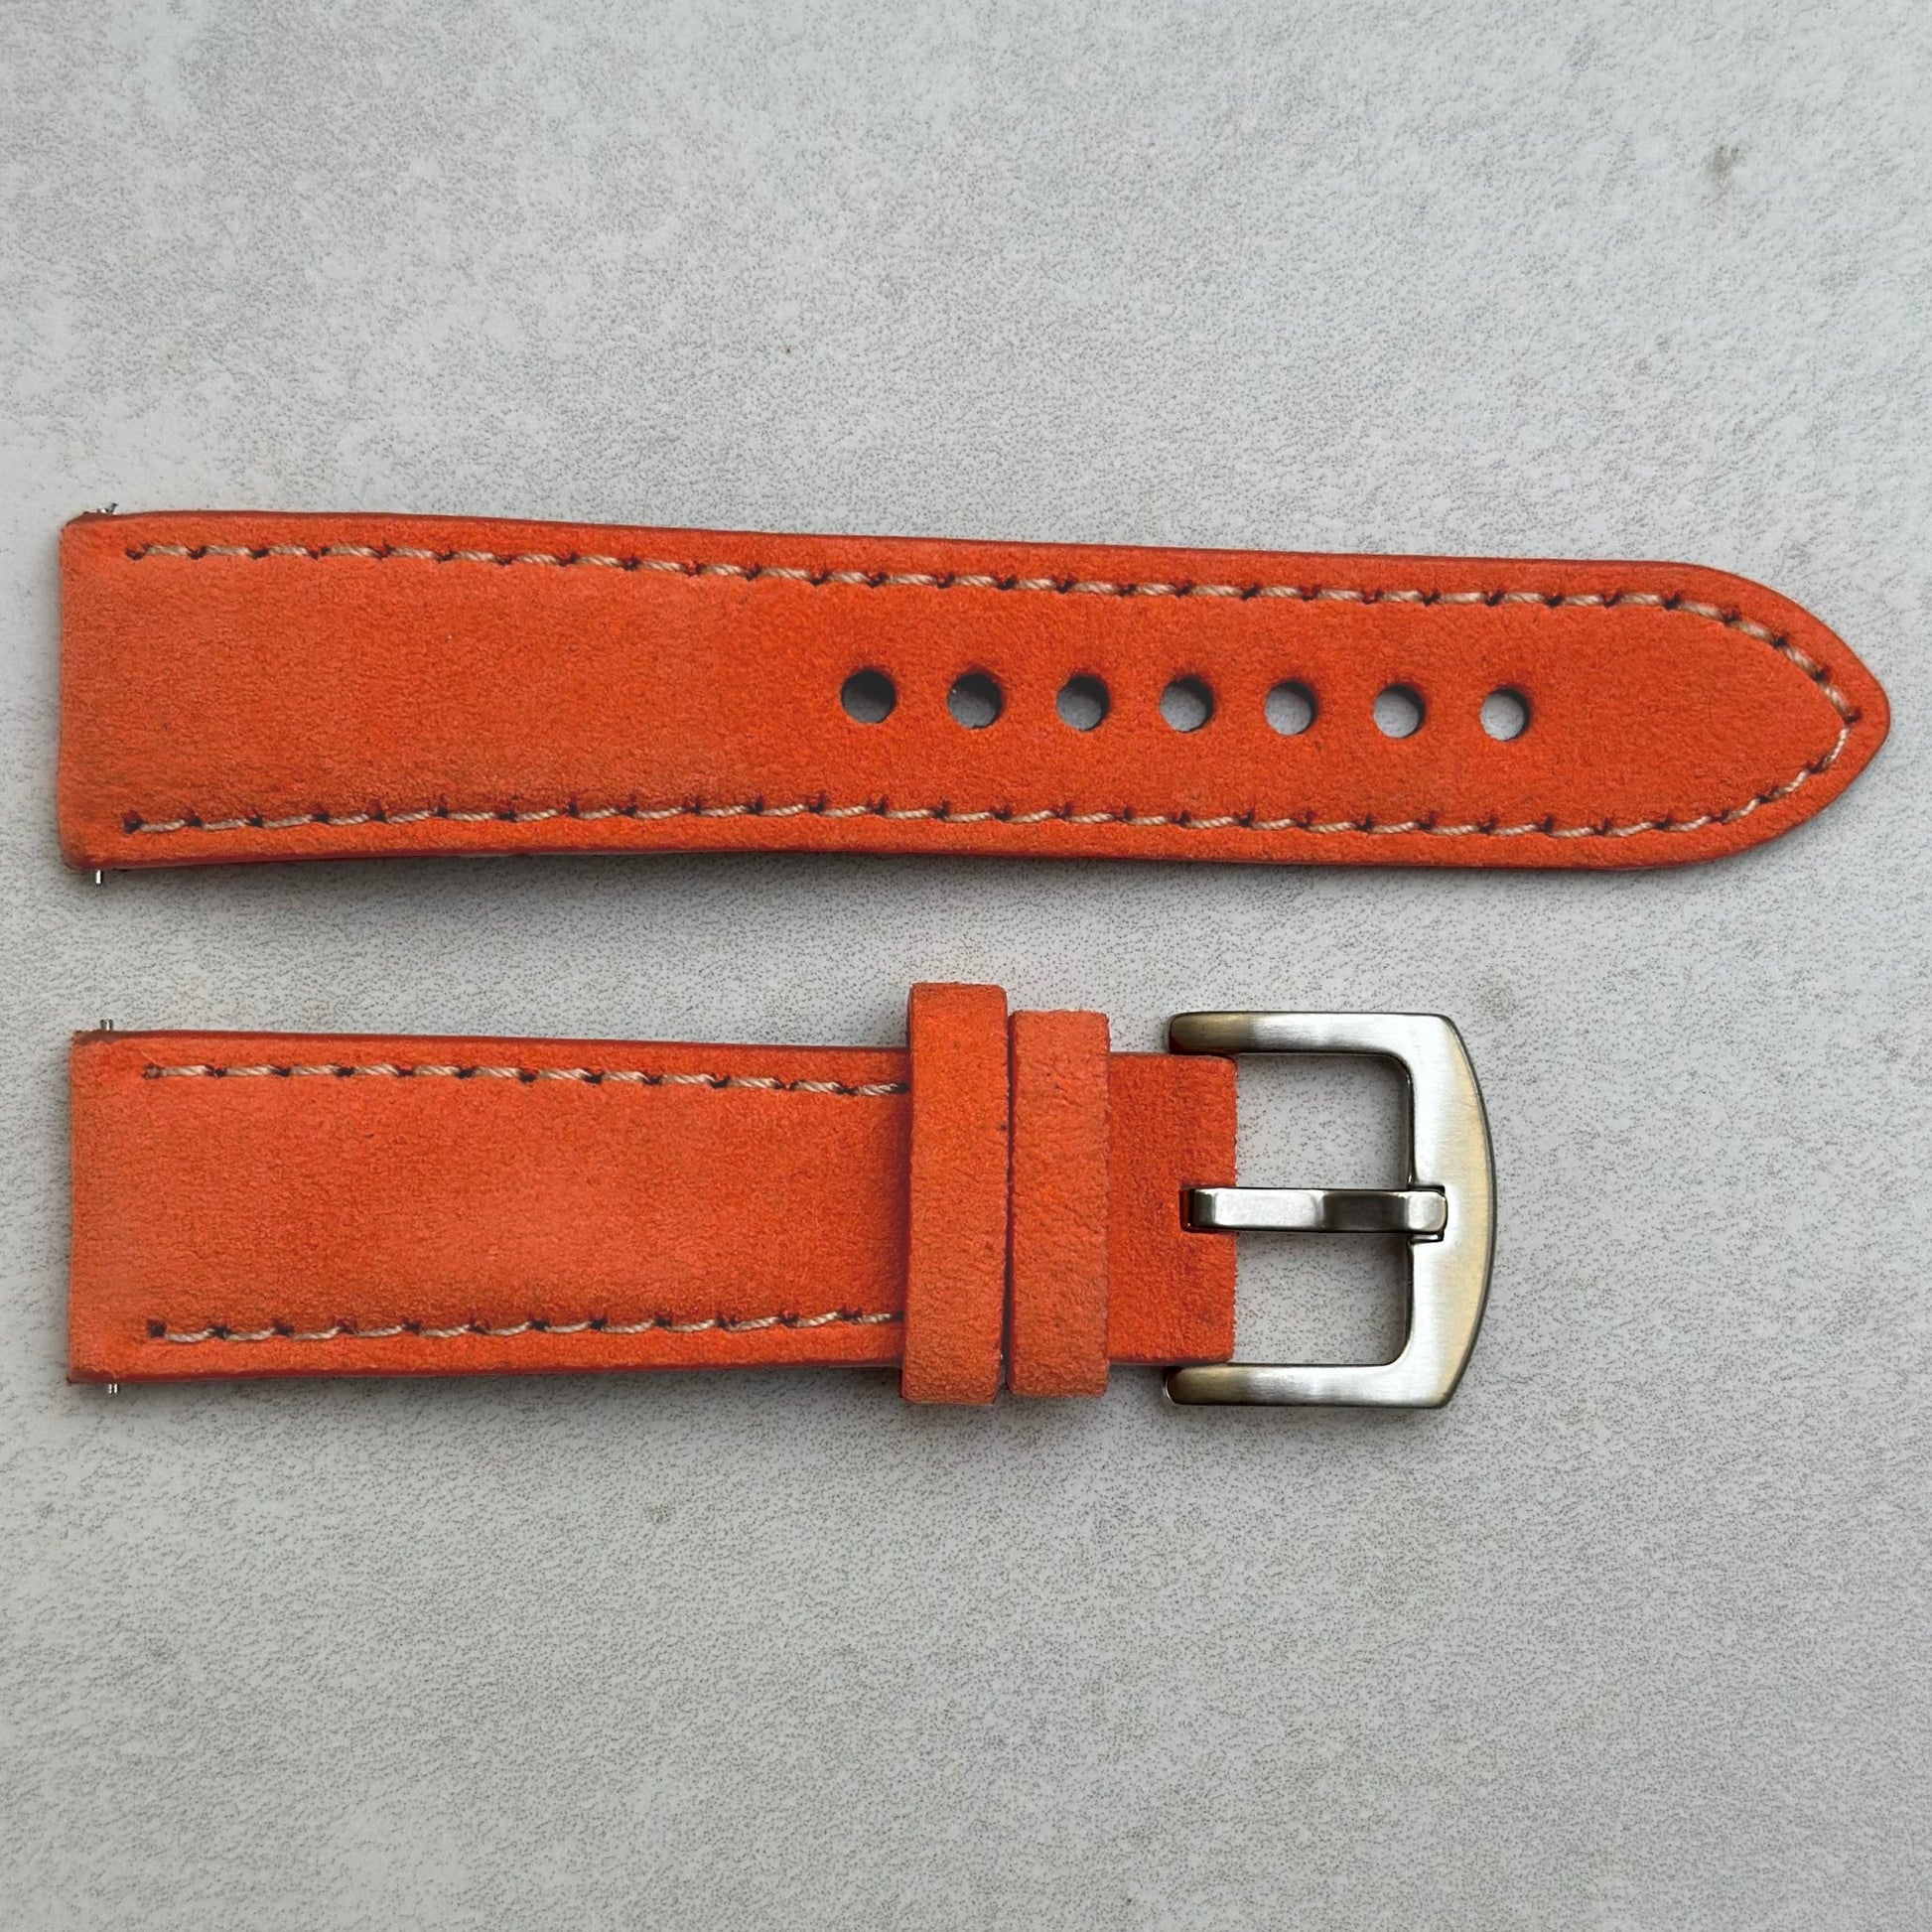 Paris orange suede watch strap. Ivory stitching. Padded suede watch strap. 18mm, 20mm, 22mm, 24mm. Watch And Strap.